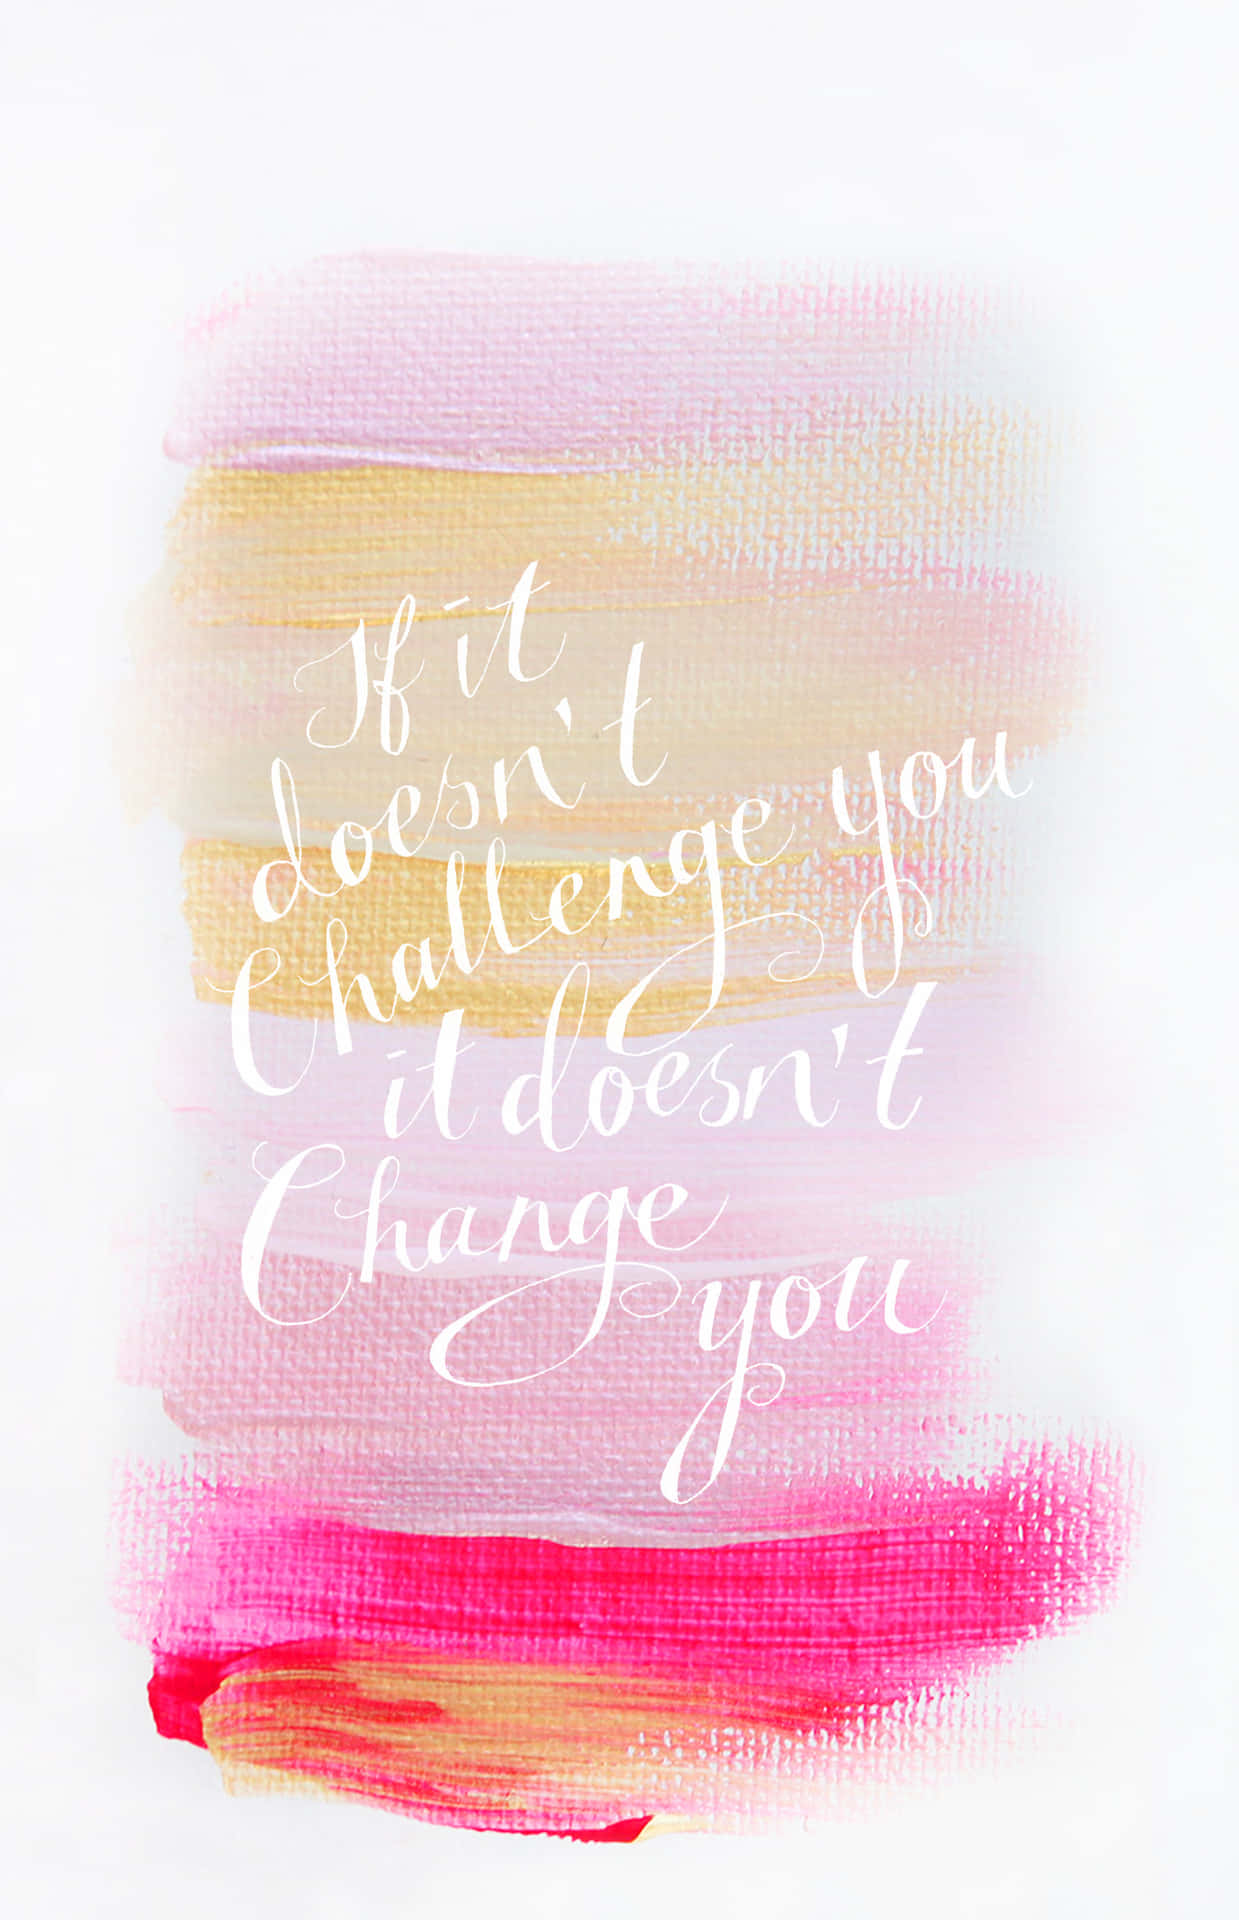 Wenndu Dich Nicht Herausforderst, Wirst Du Dich Nicht Verändern.